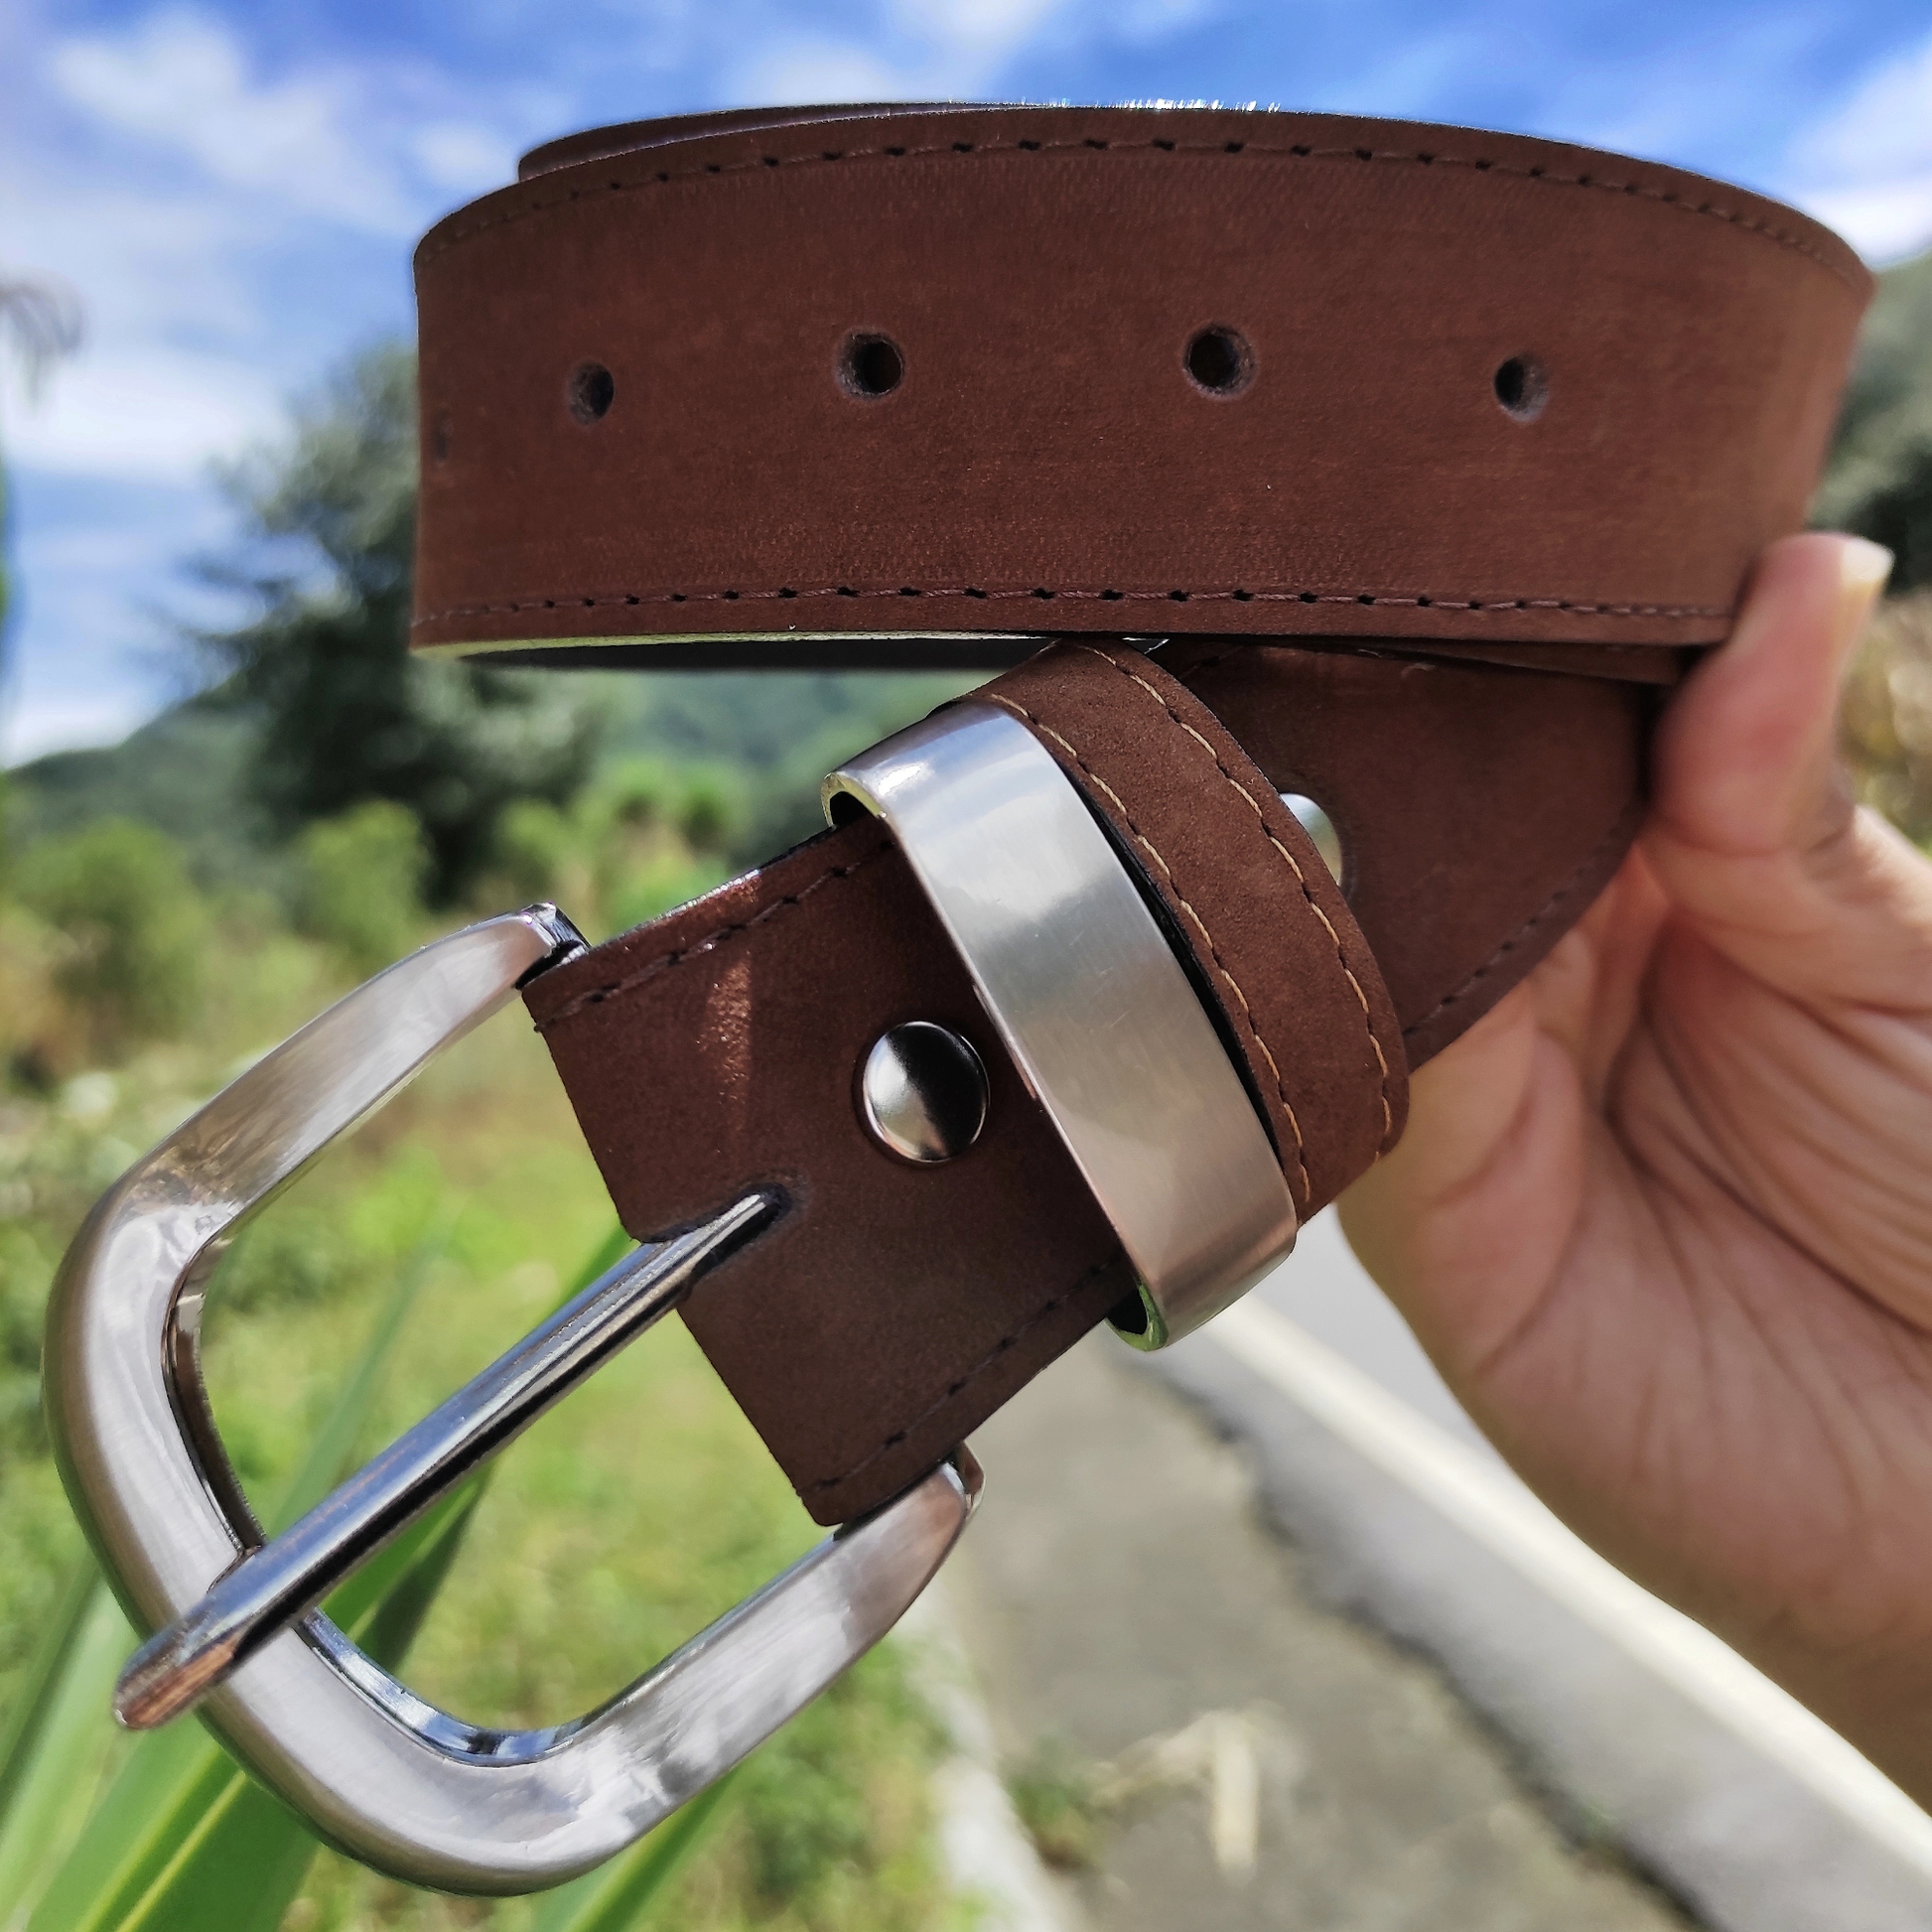 Black Leather Belt, Handmade in Seattle